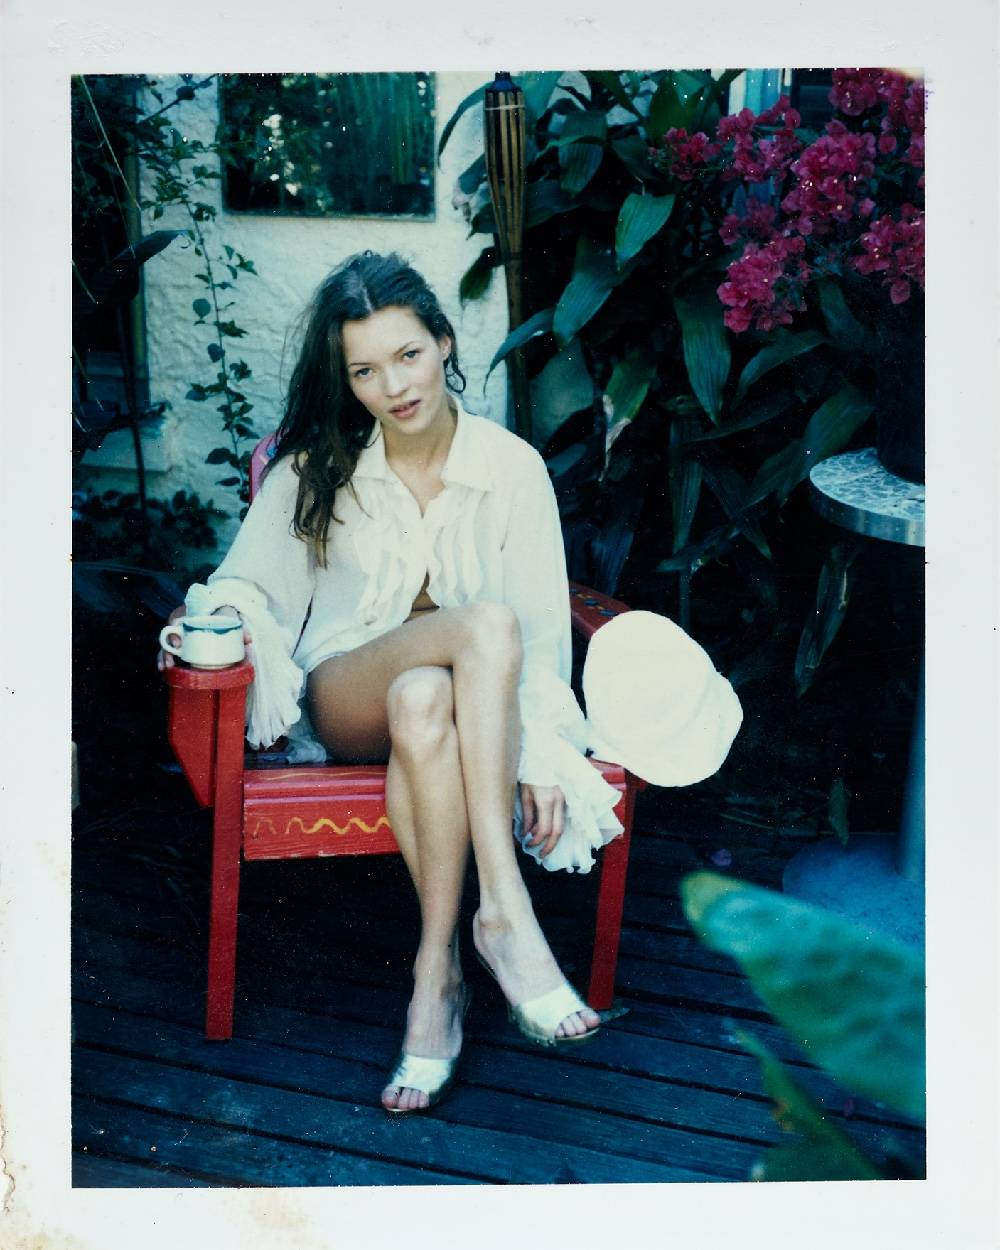 Splendor in the Garden, Kate Moss, Miami, 1993 © Ellen von Unwerth